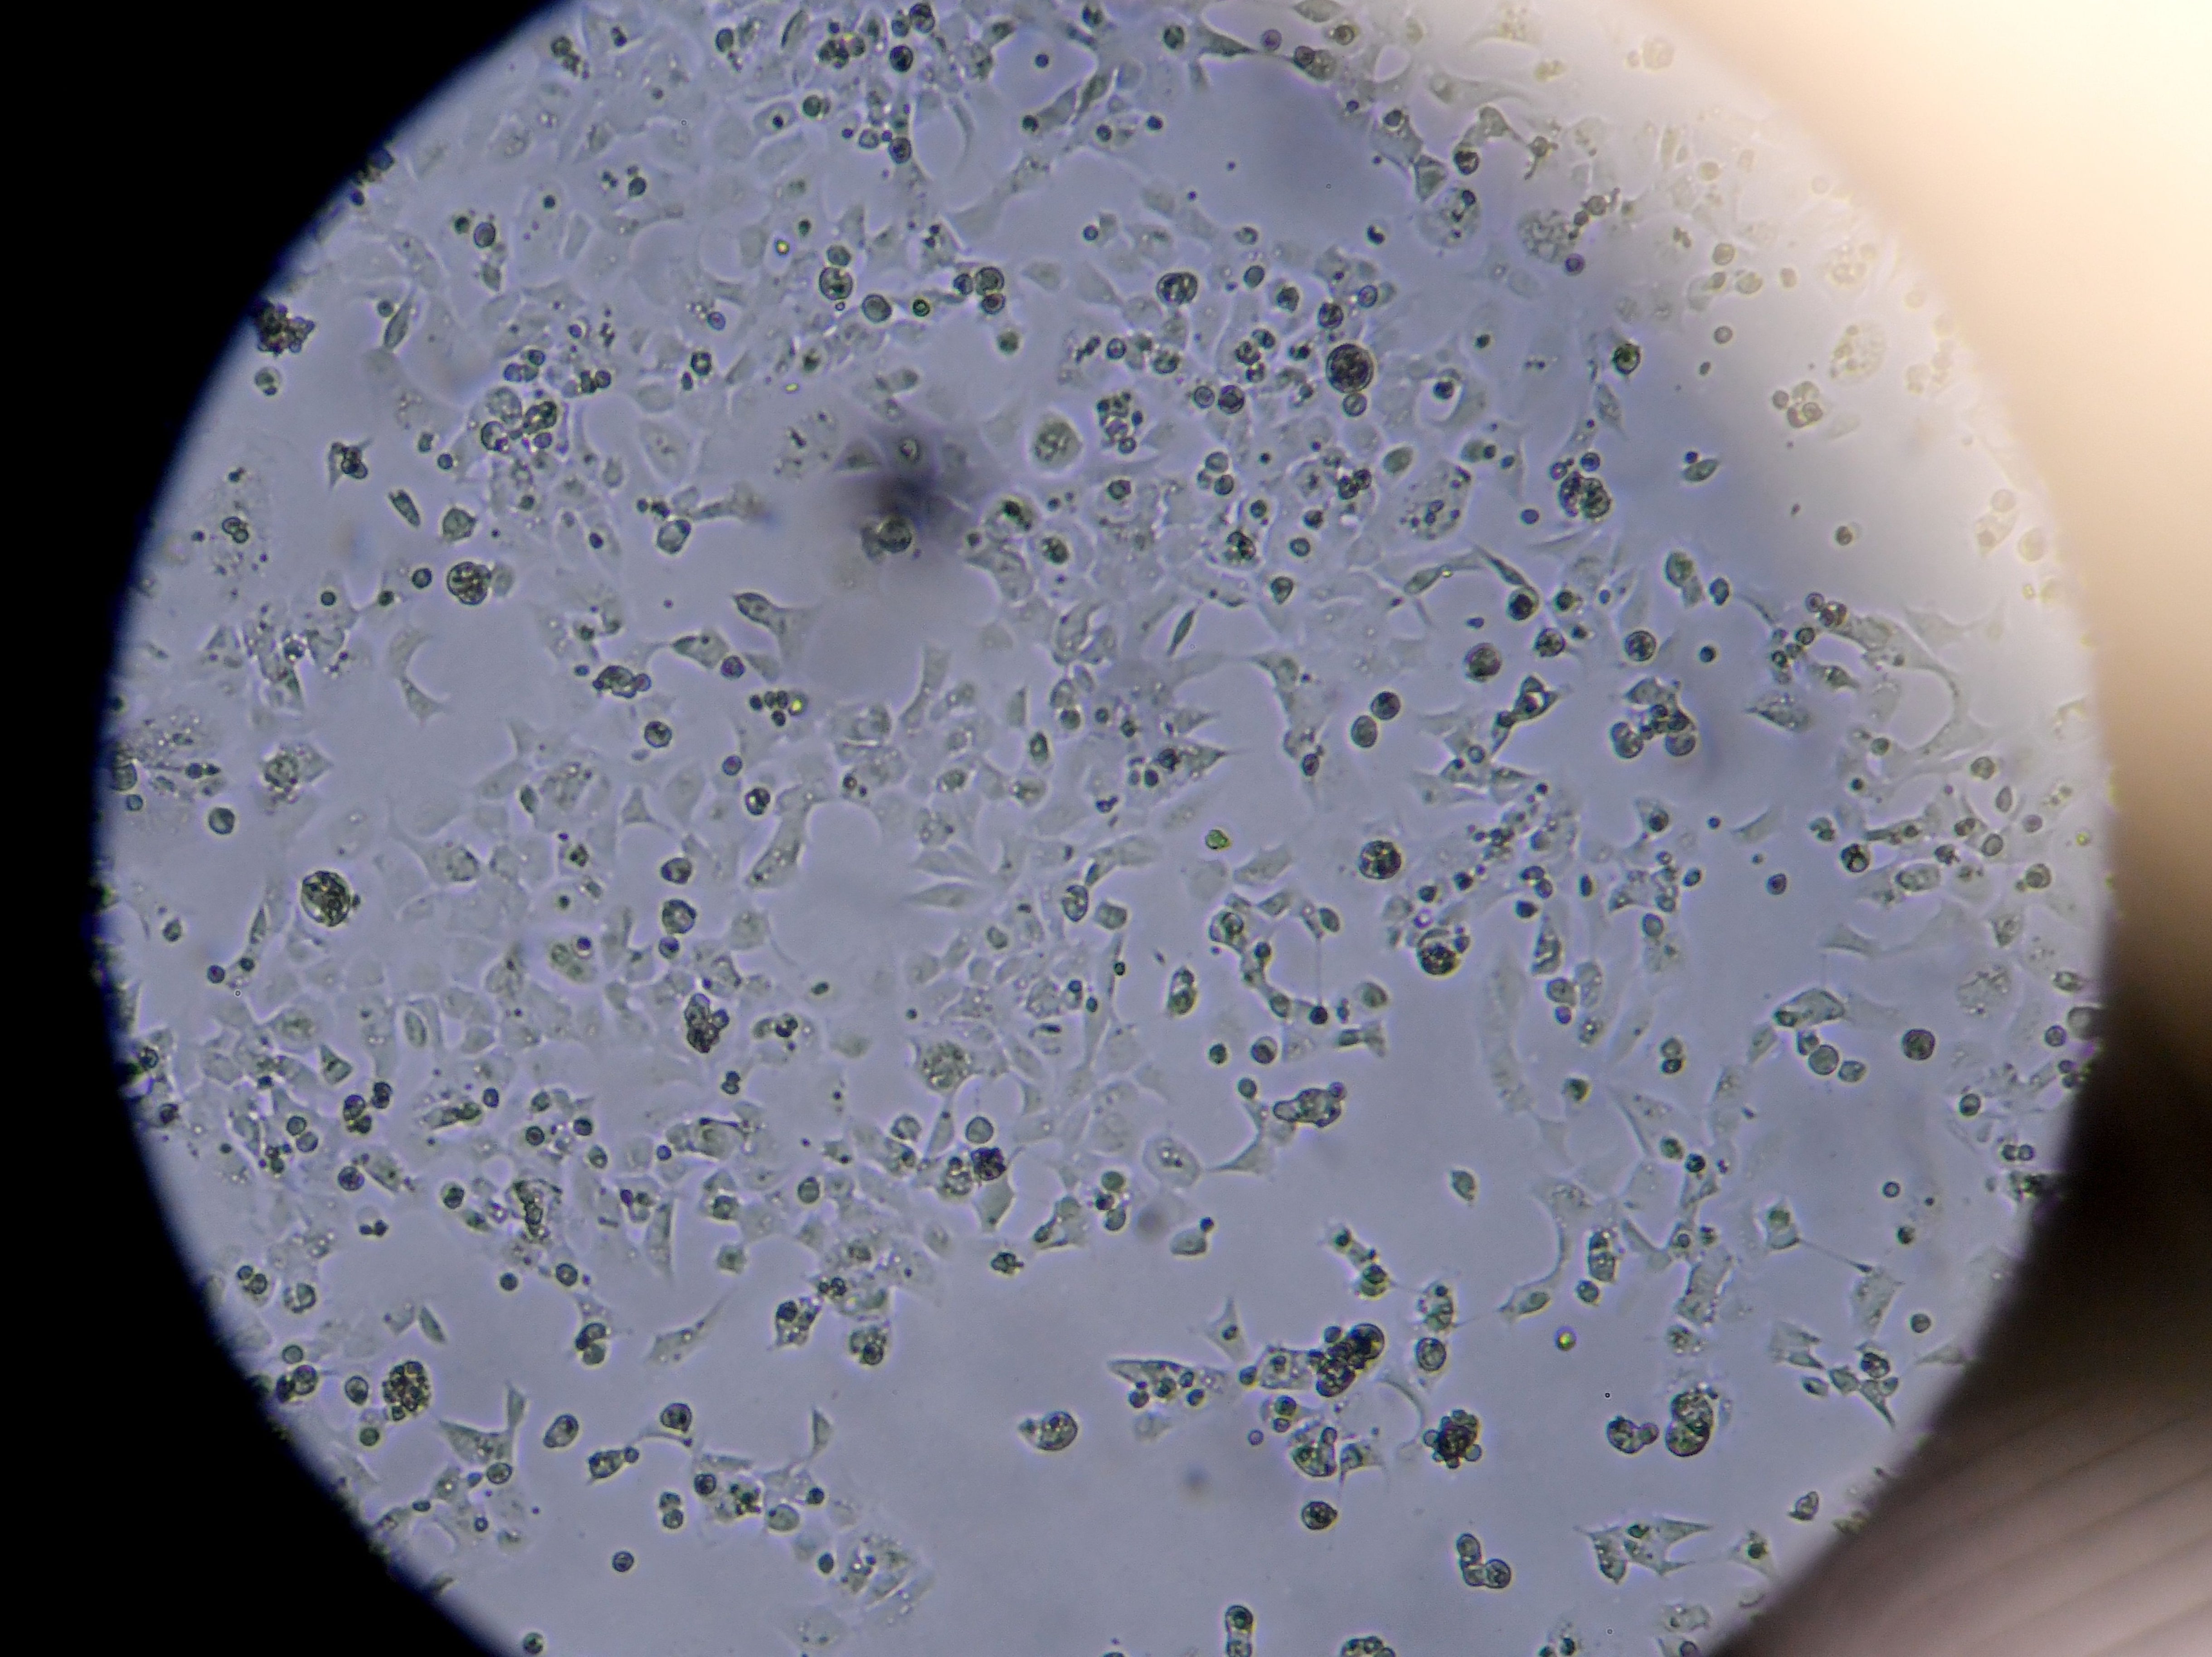 Células que contienen el nuevo coronavirus Sars-CoV-2 vistas en el microscopio